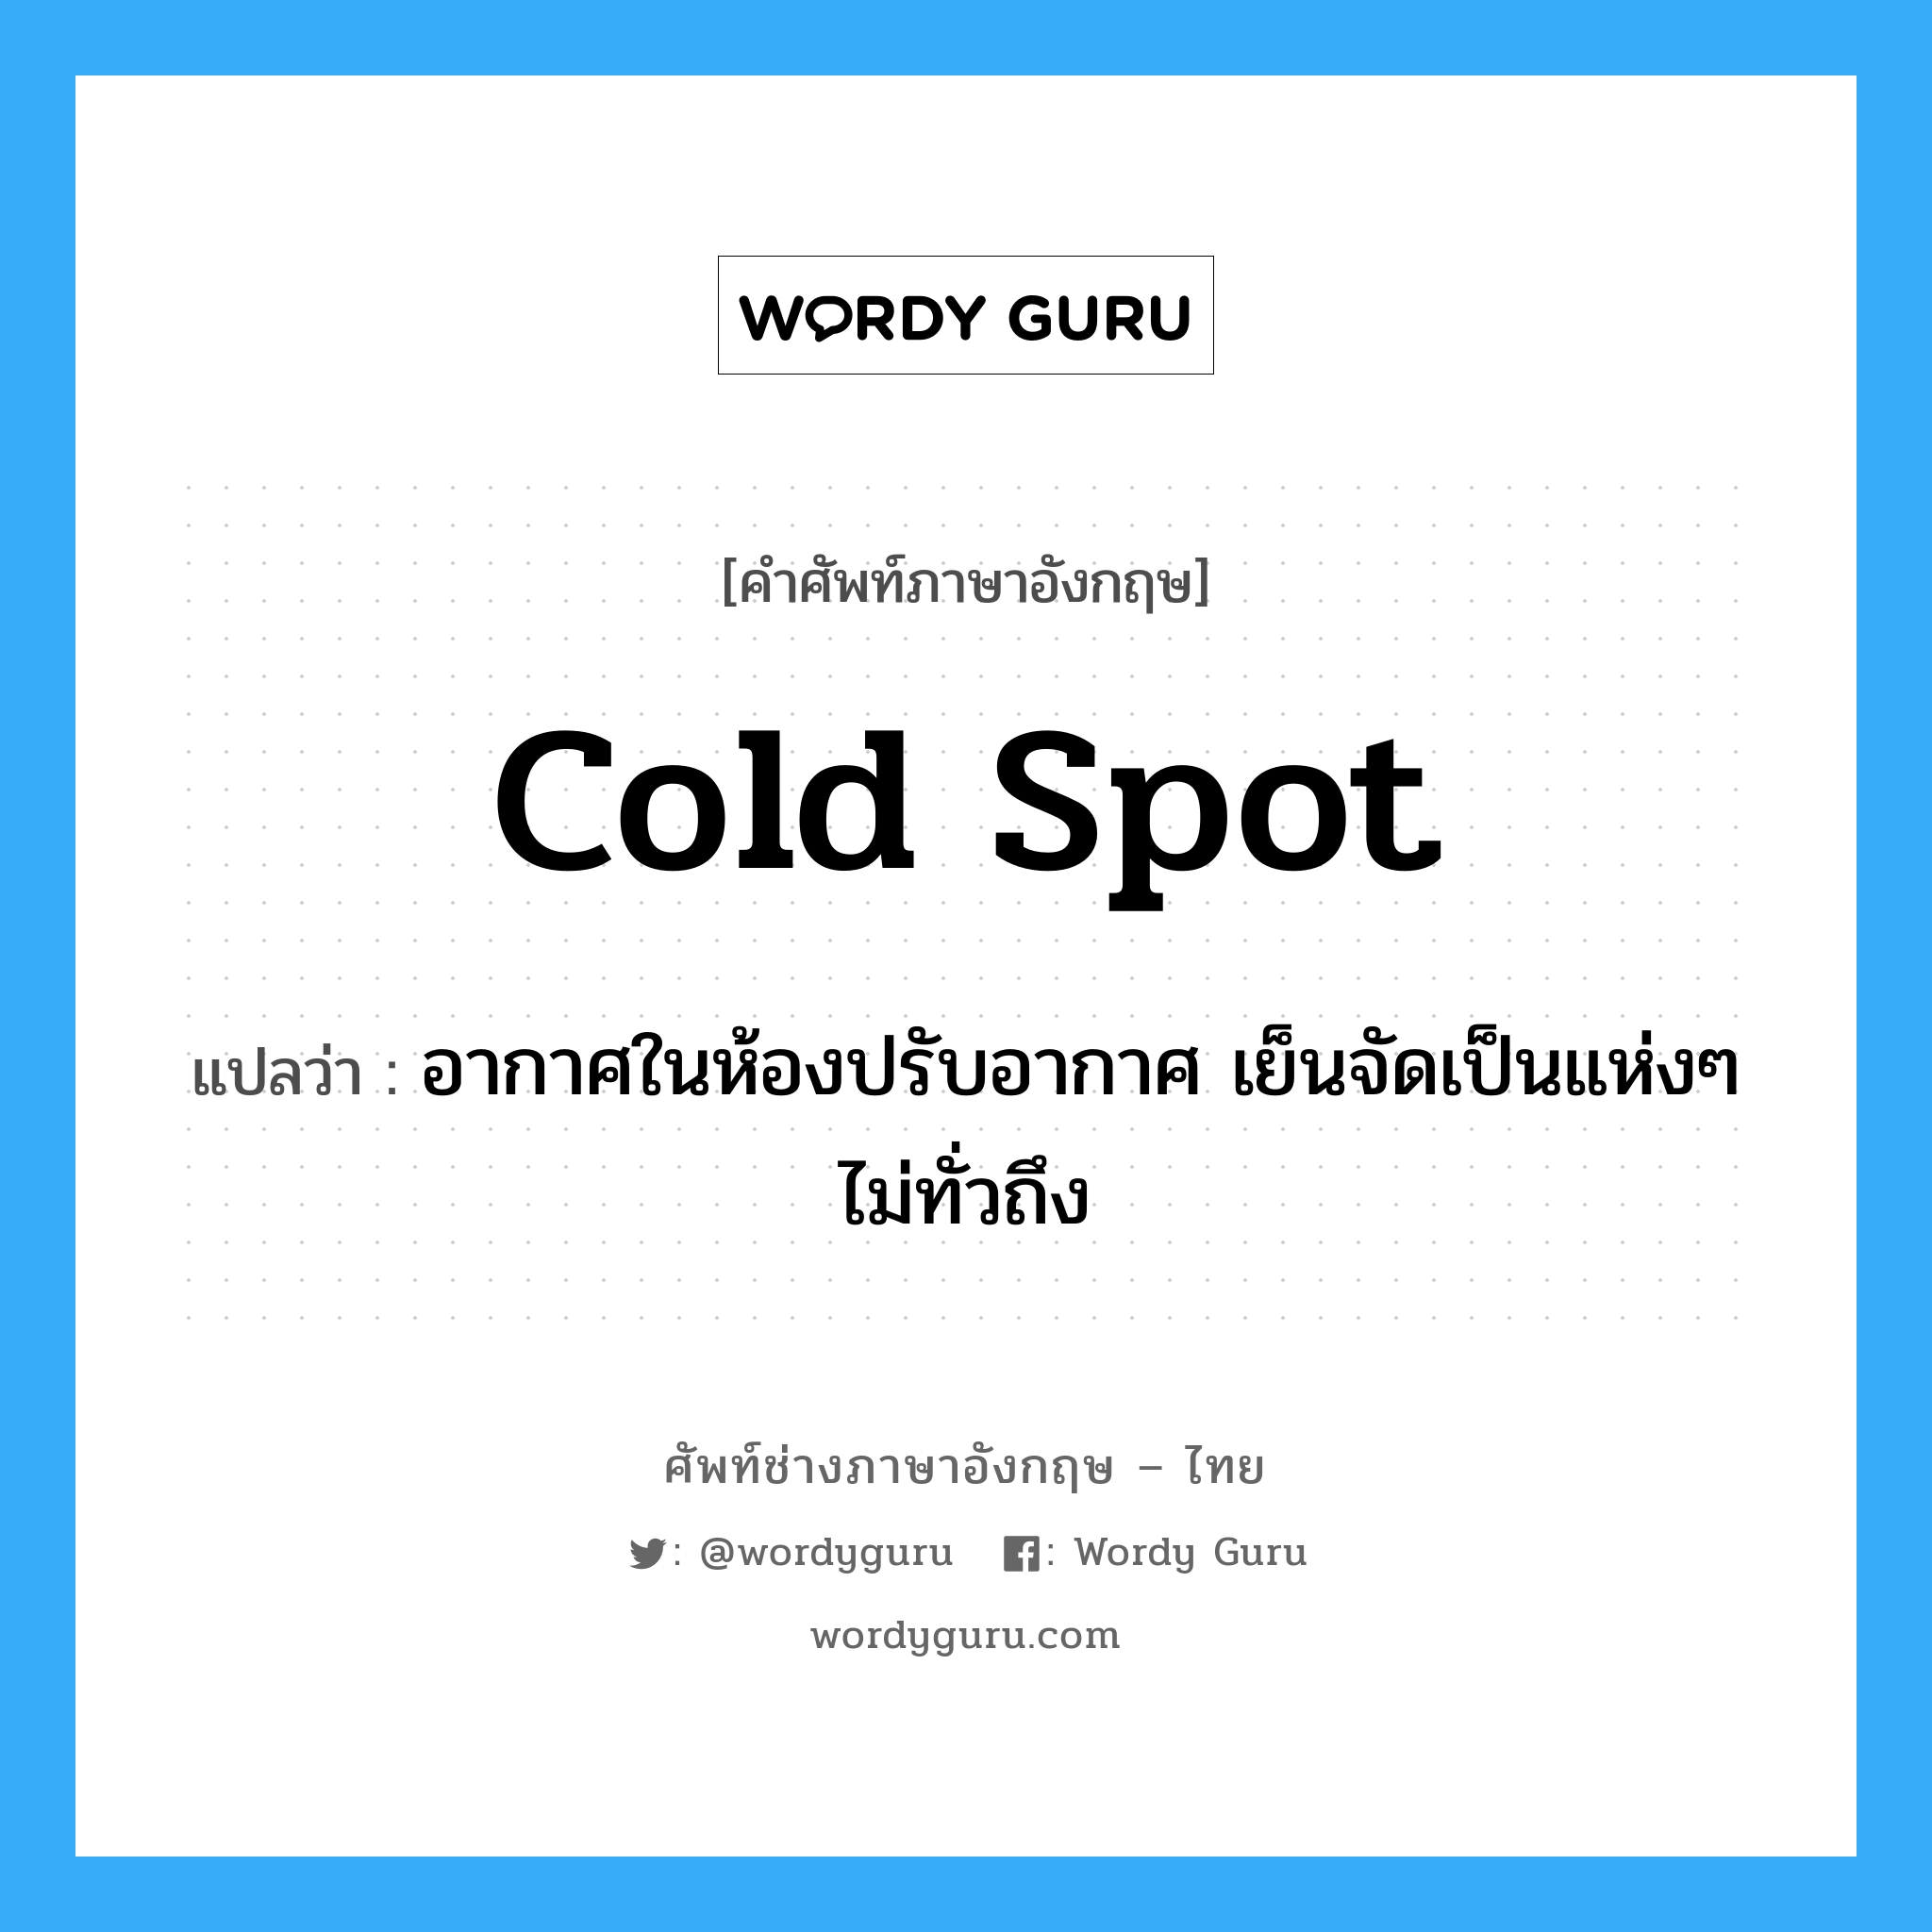 cold spot แปลว่า?, คำศัพท์ช่างภาษาอังกฤษ - ไทย cold spot คำศัพท์ภาษาอังกฤษ cold spot แปลว่า อากาศในห้องปรับอากาศ เย็นจัดเป็นแห่งๆ ไม่ทั่วถึง